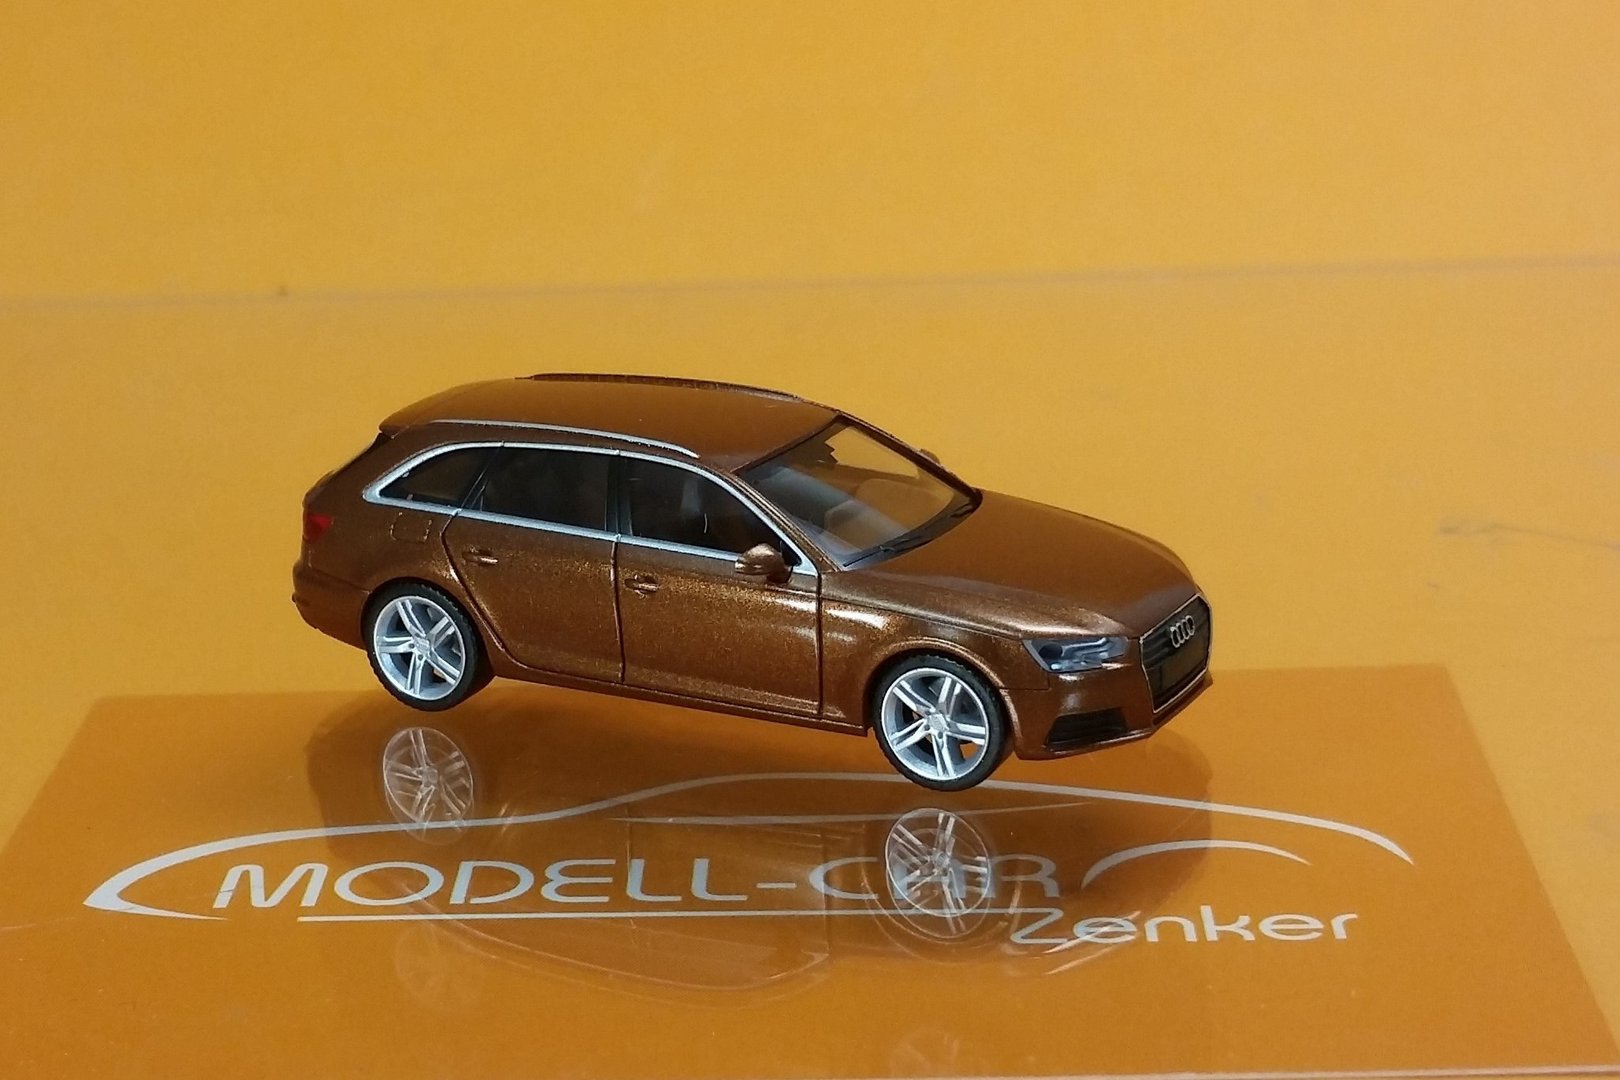 Audi A4 Avant (B9), Modell 2015-, mondscheinblau, Herpa, 1:87,  Werbeschachtel